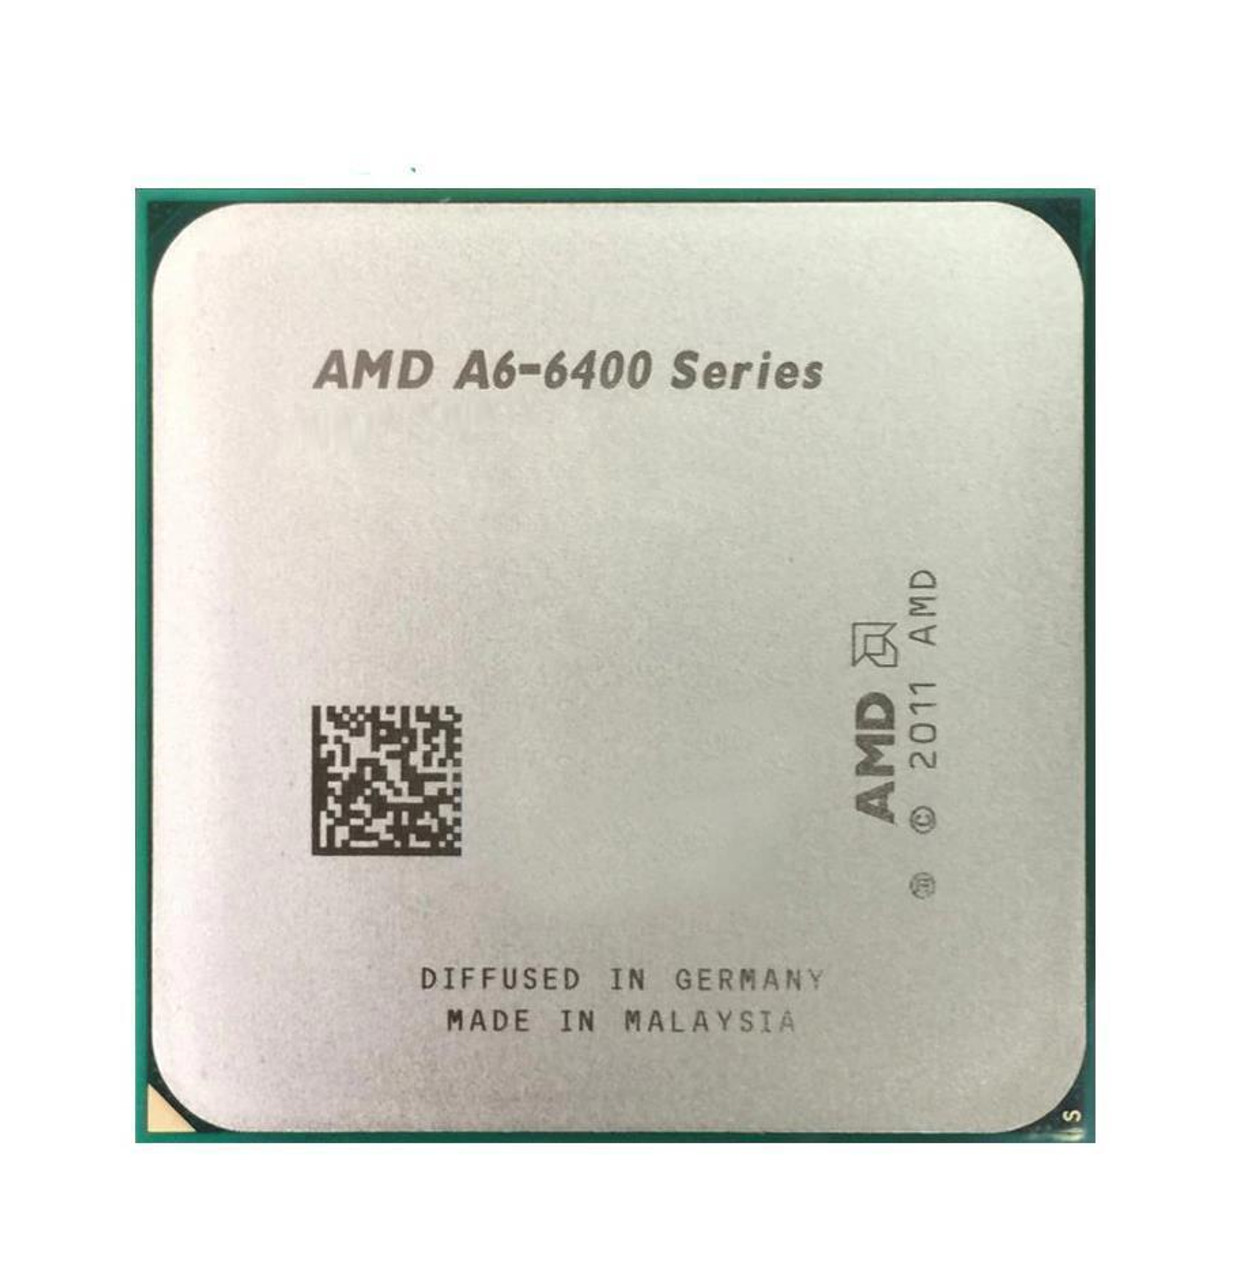 Dell 3.90GHz 1MB L2 Cache Socket FM2 AMD A6-6400K Dual-Core Desktop Processor Upgrade